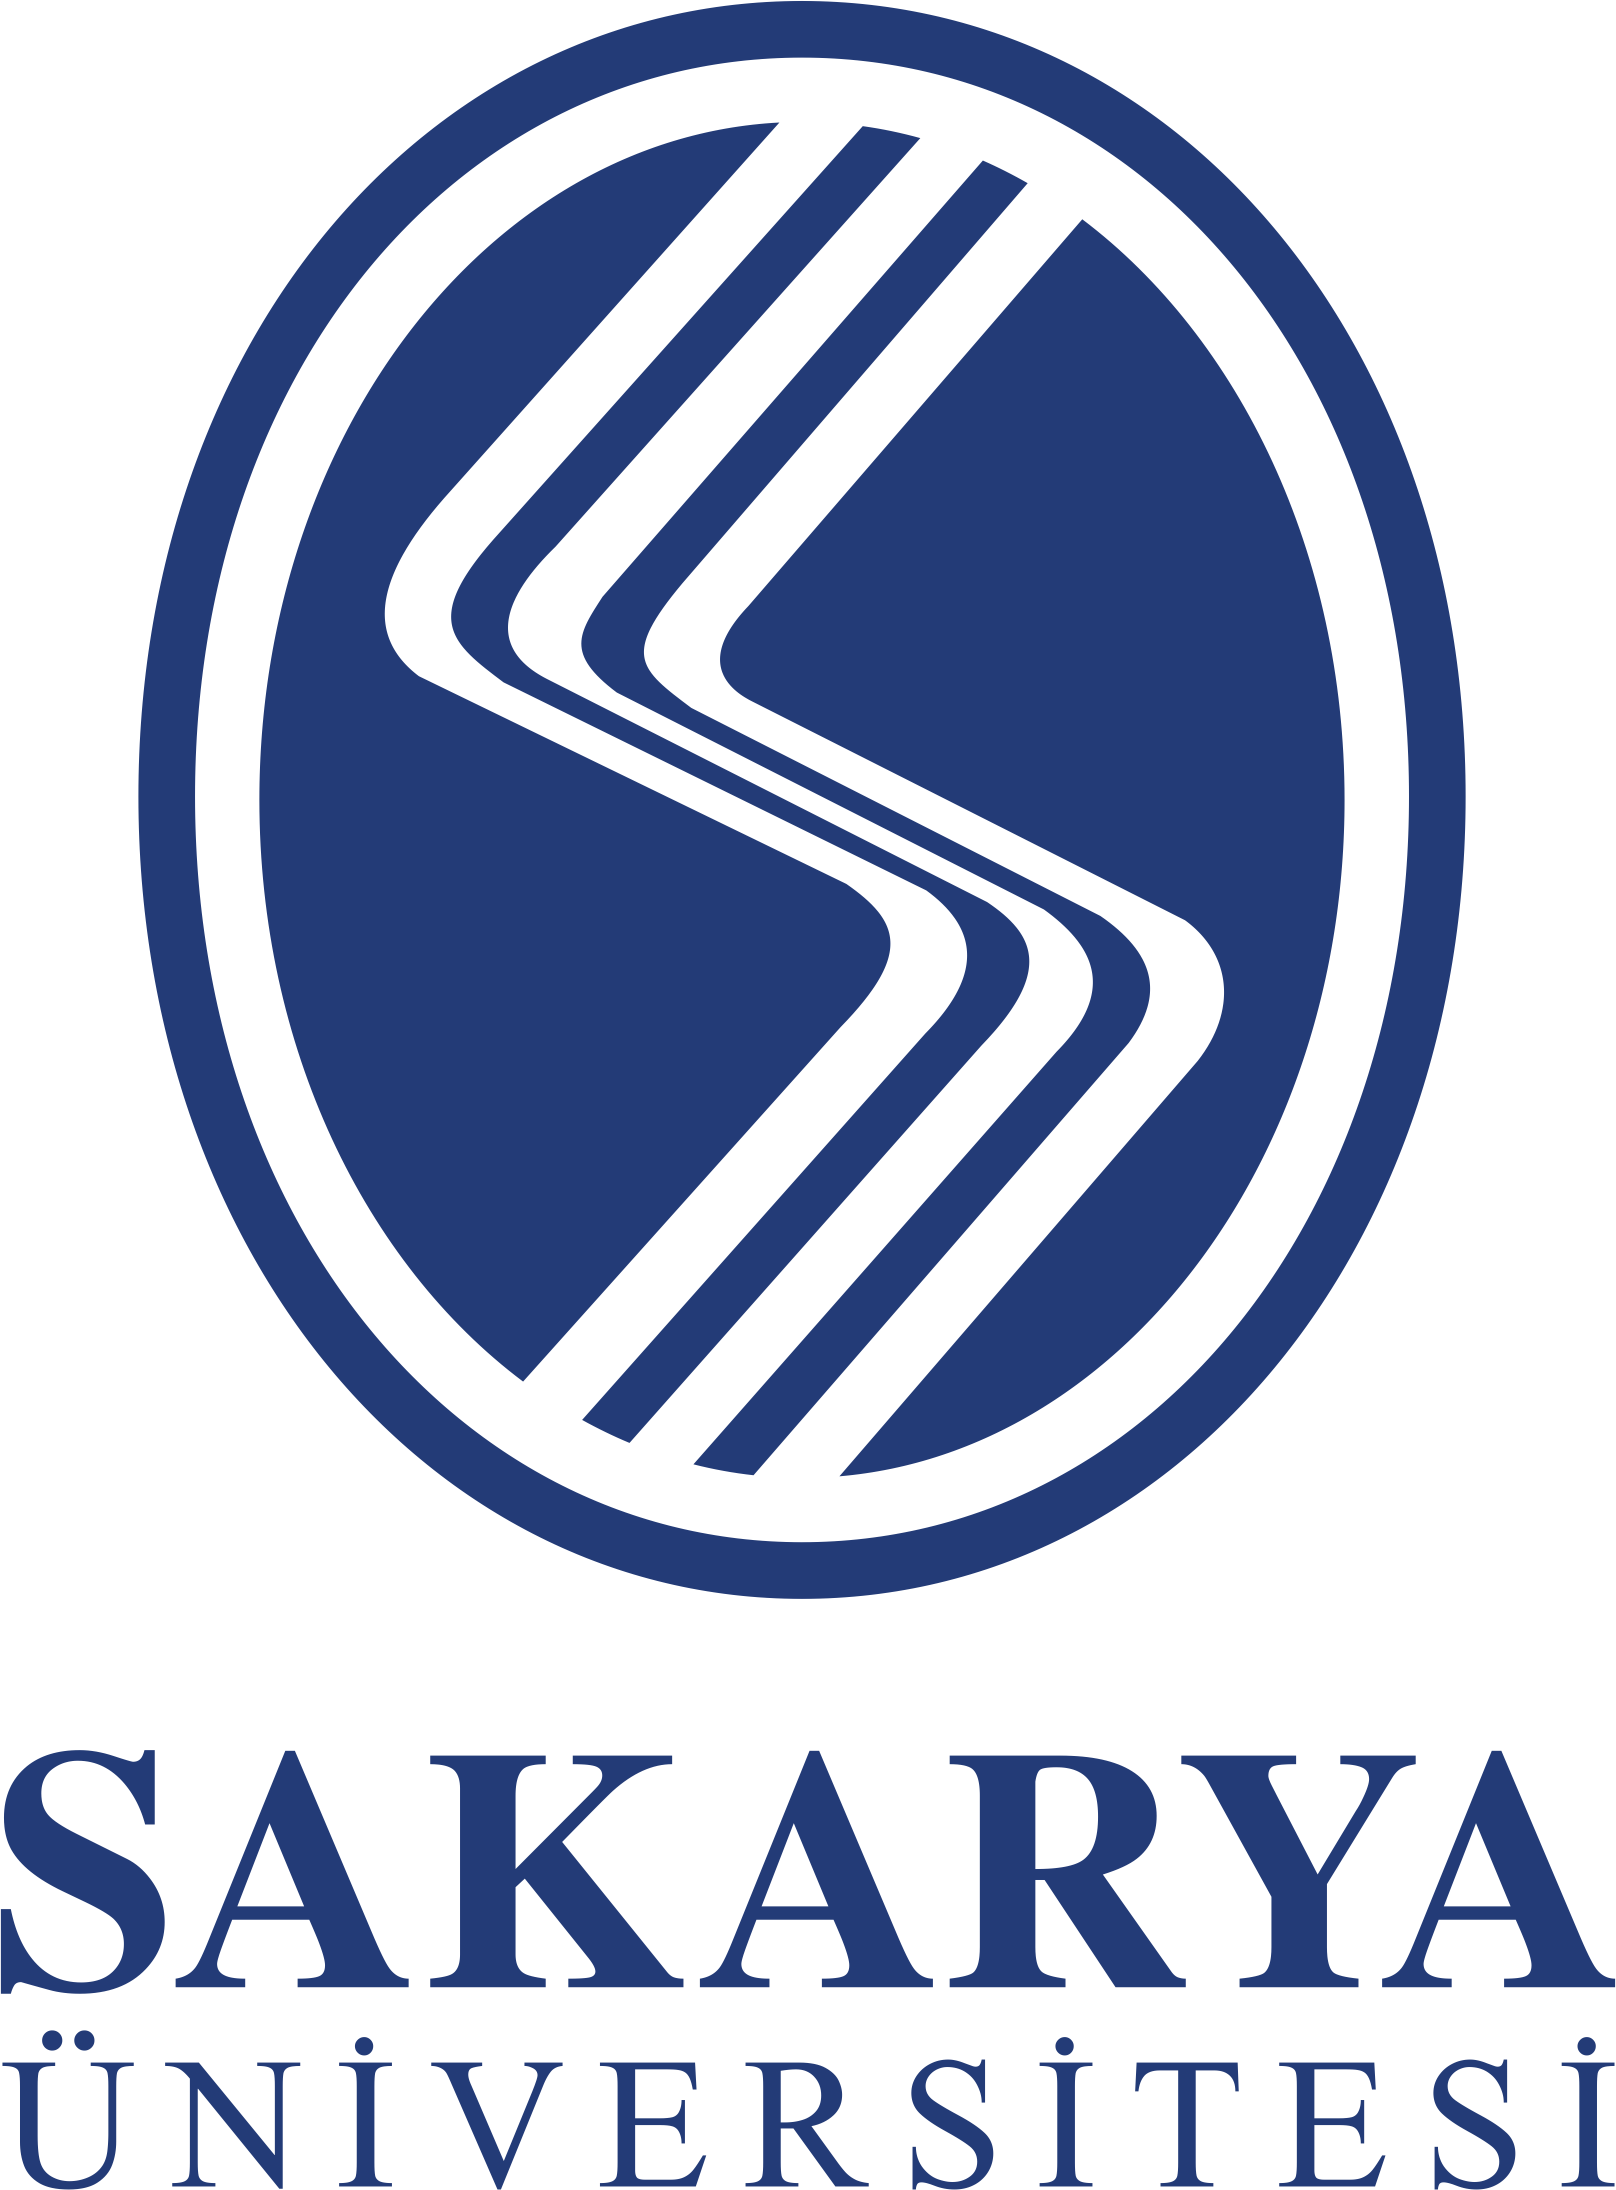 Sakarya University